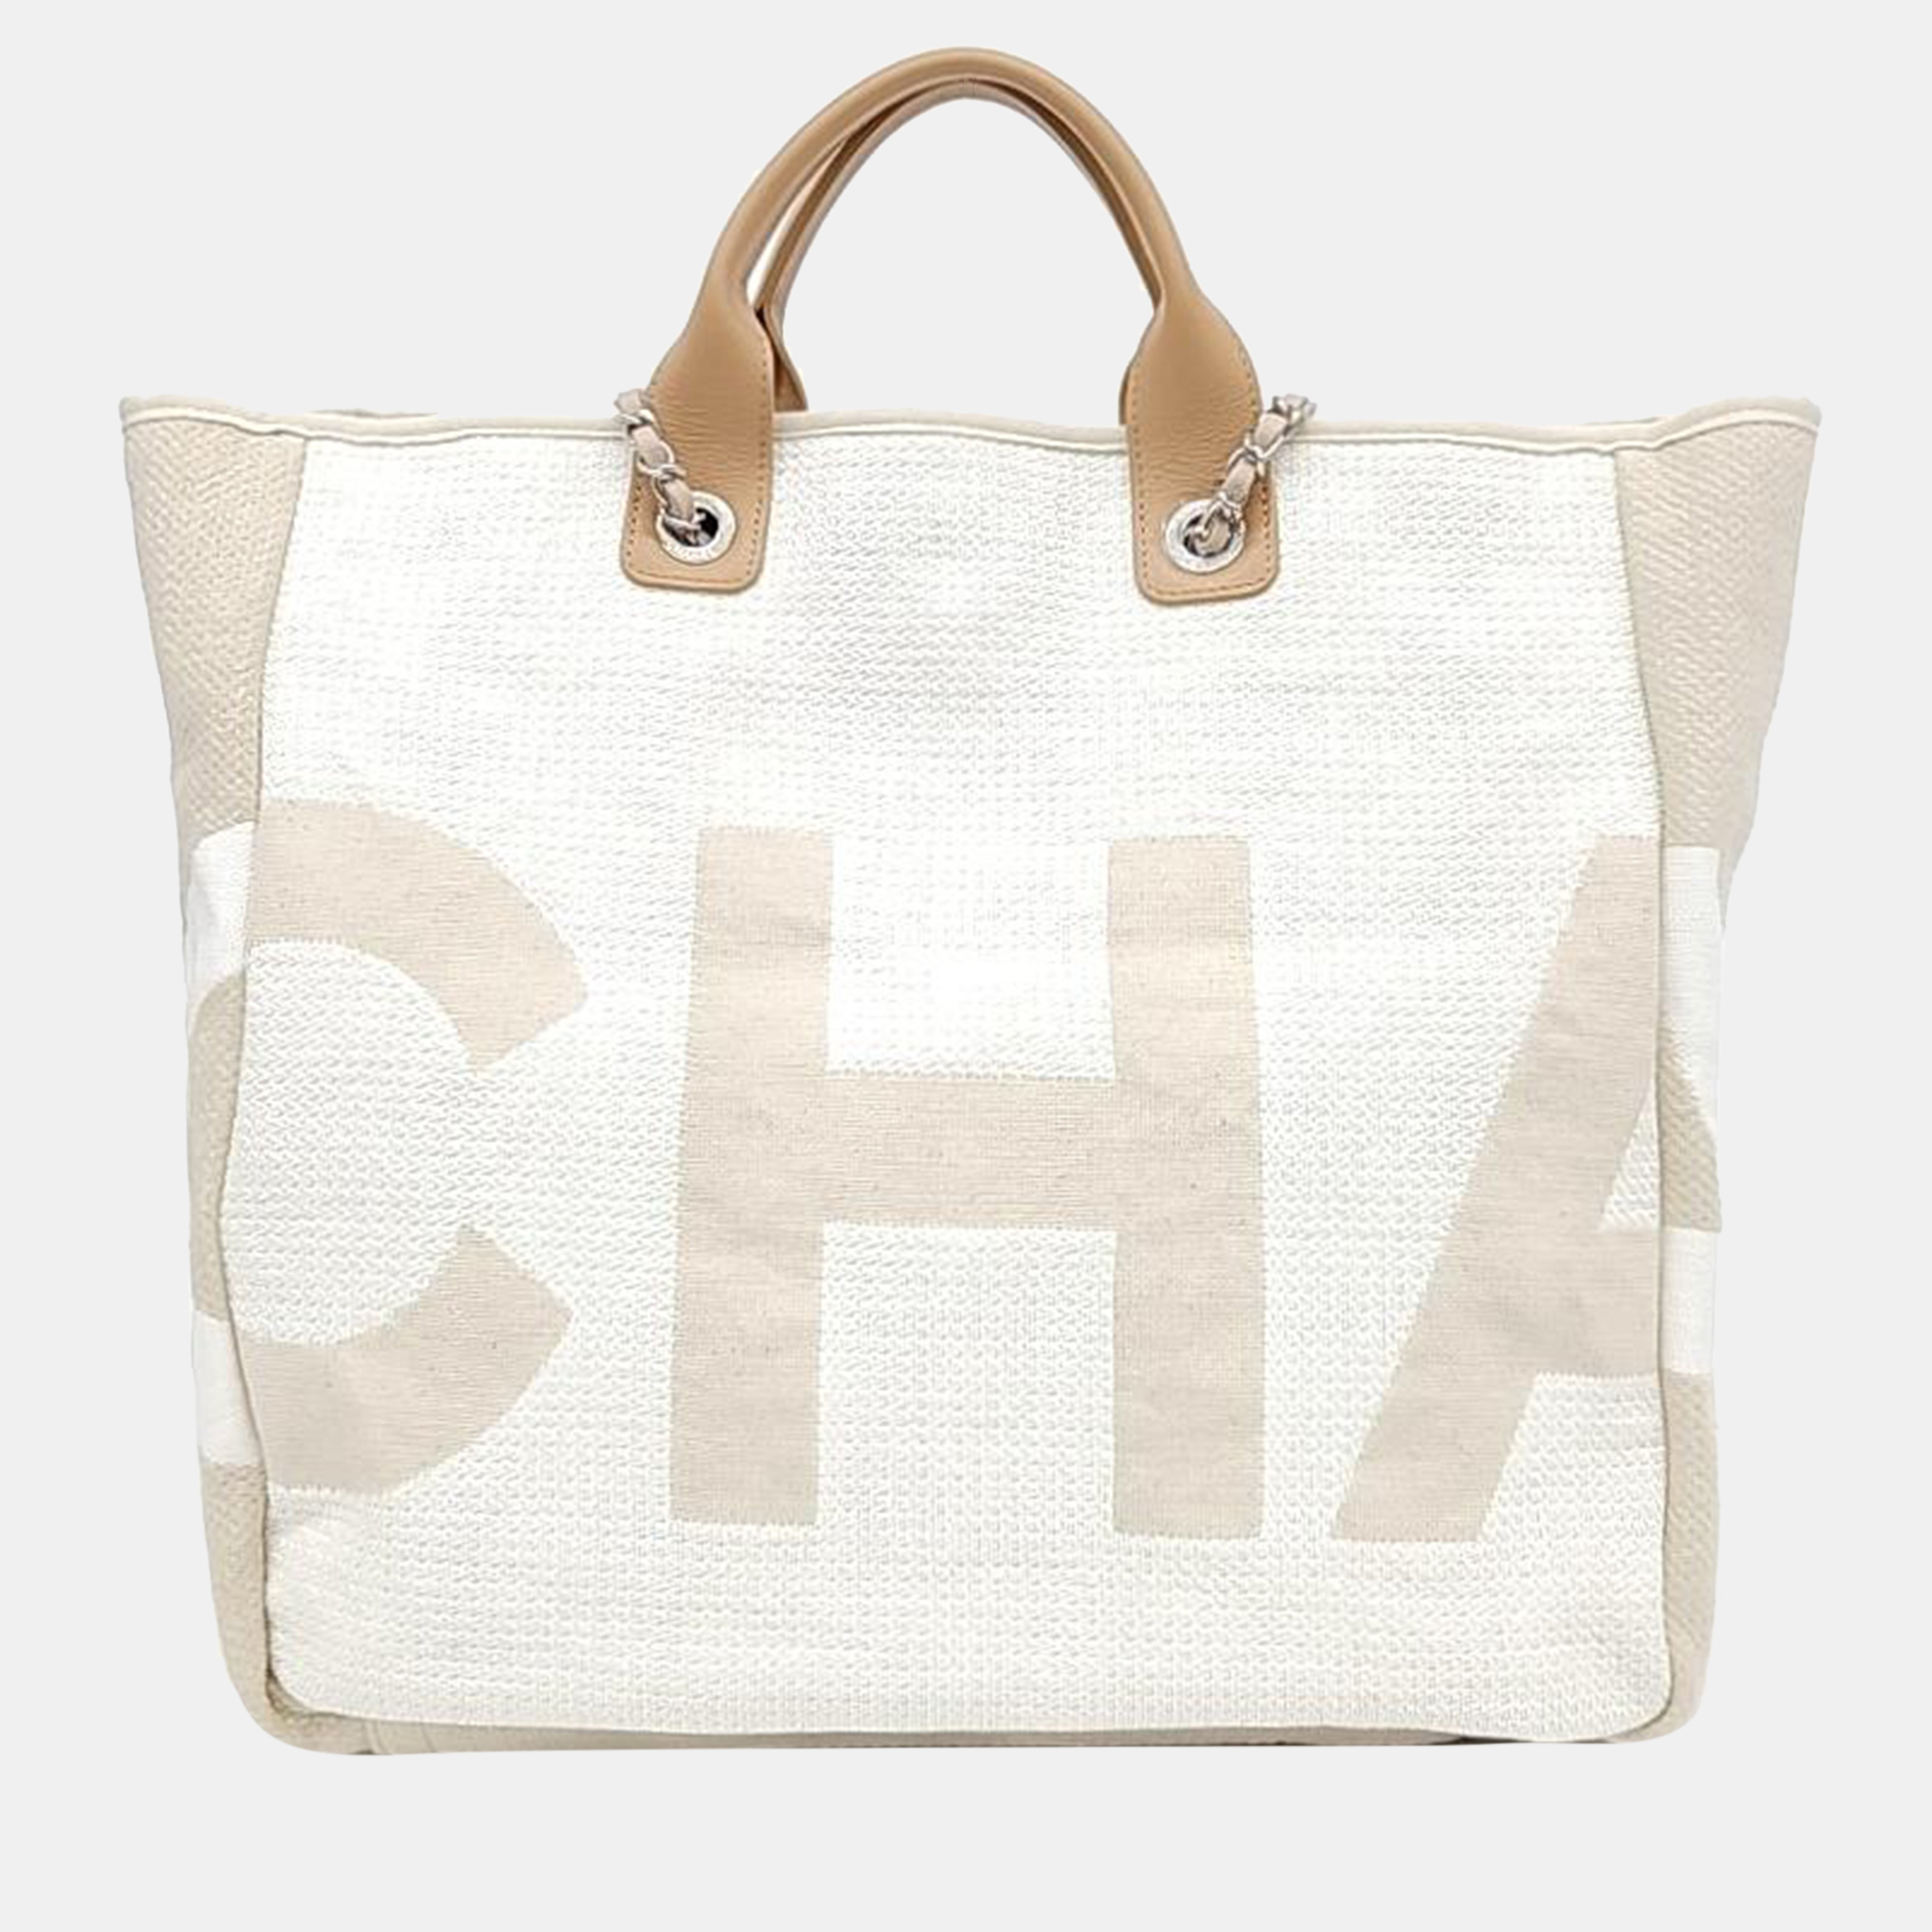 Chanel doville tote & shoulder bag